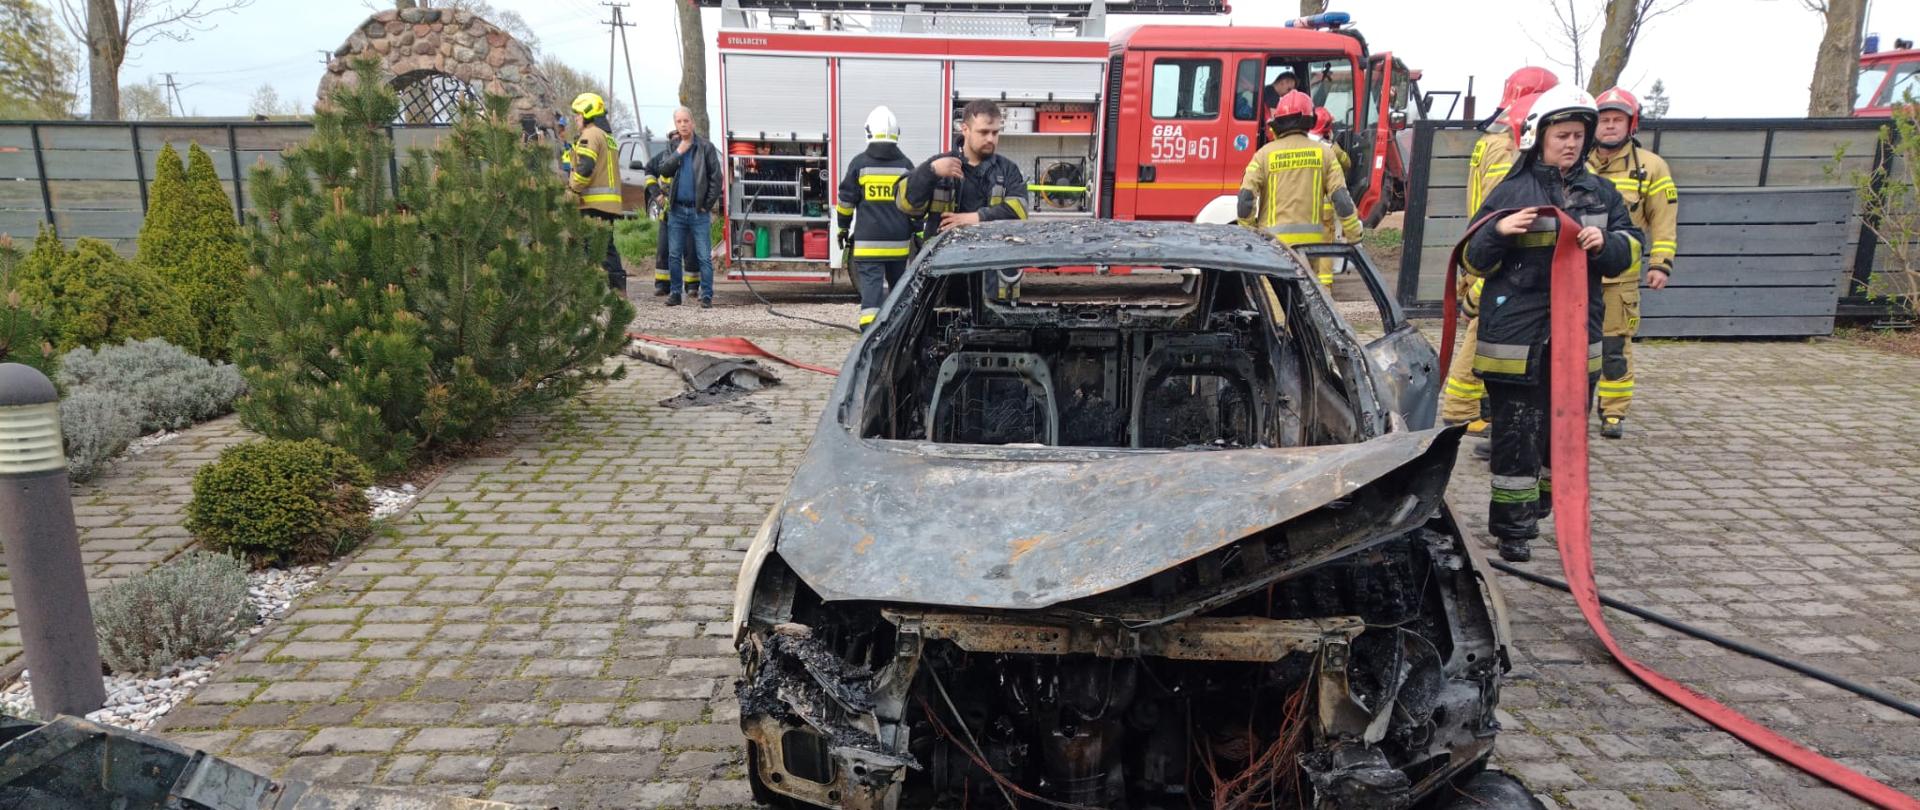 Na zdjęciu widać spalony samochód osobowy w tle strażacy zwijający sprzęt oraz samochód pożarniczy GBA..